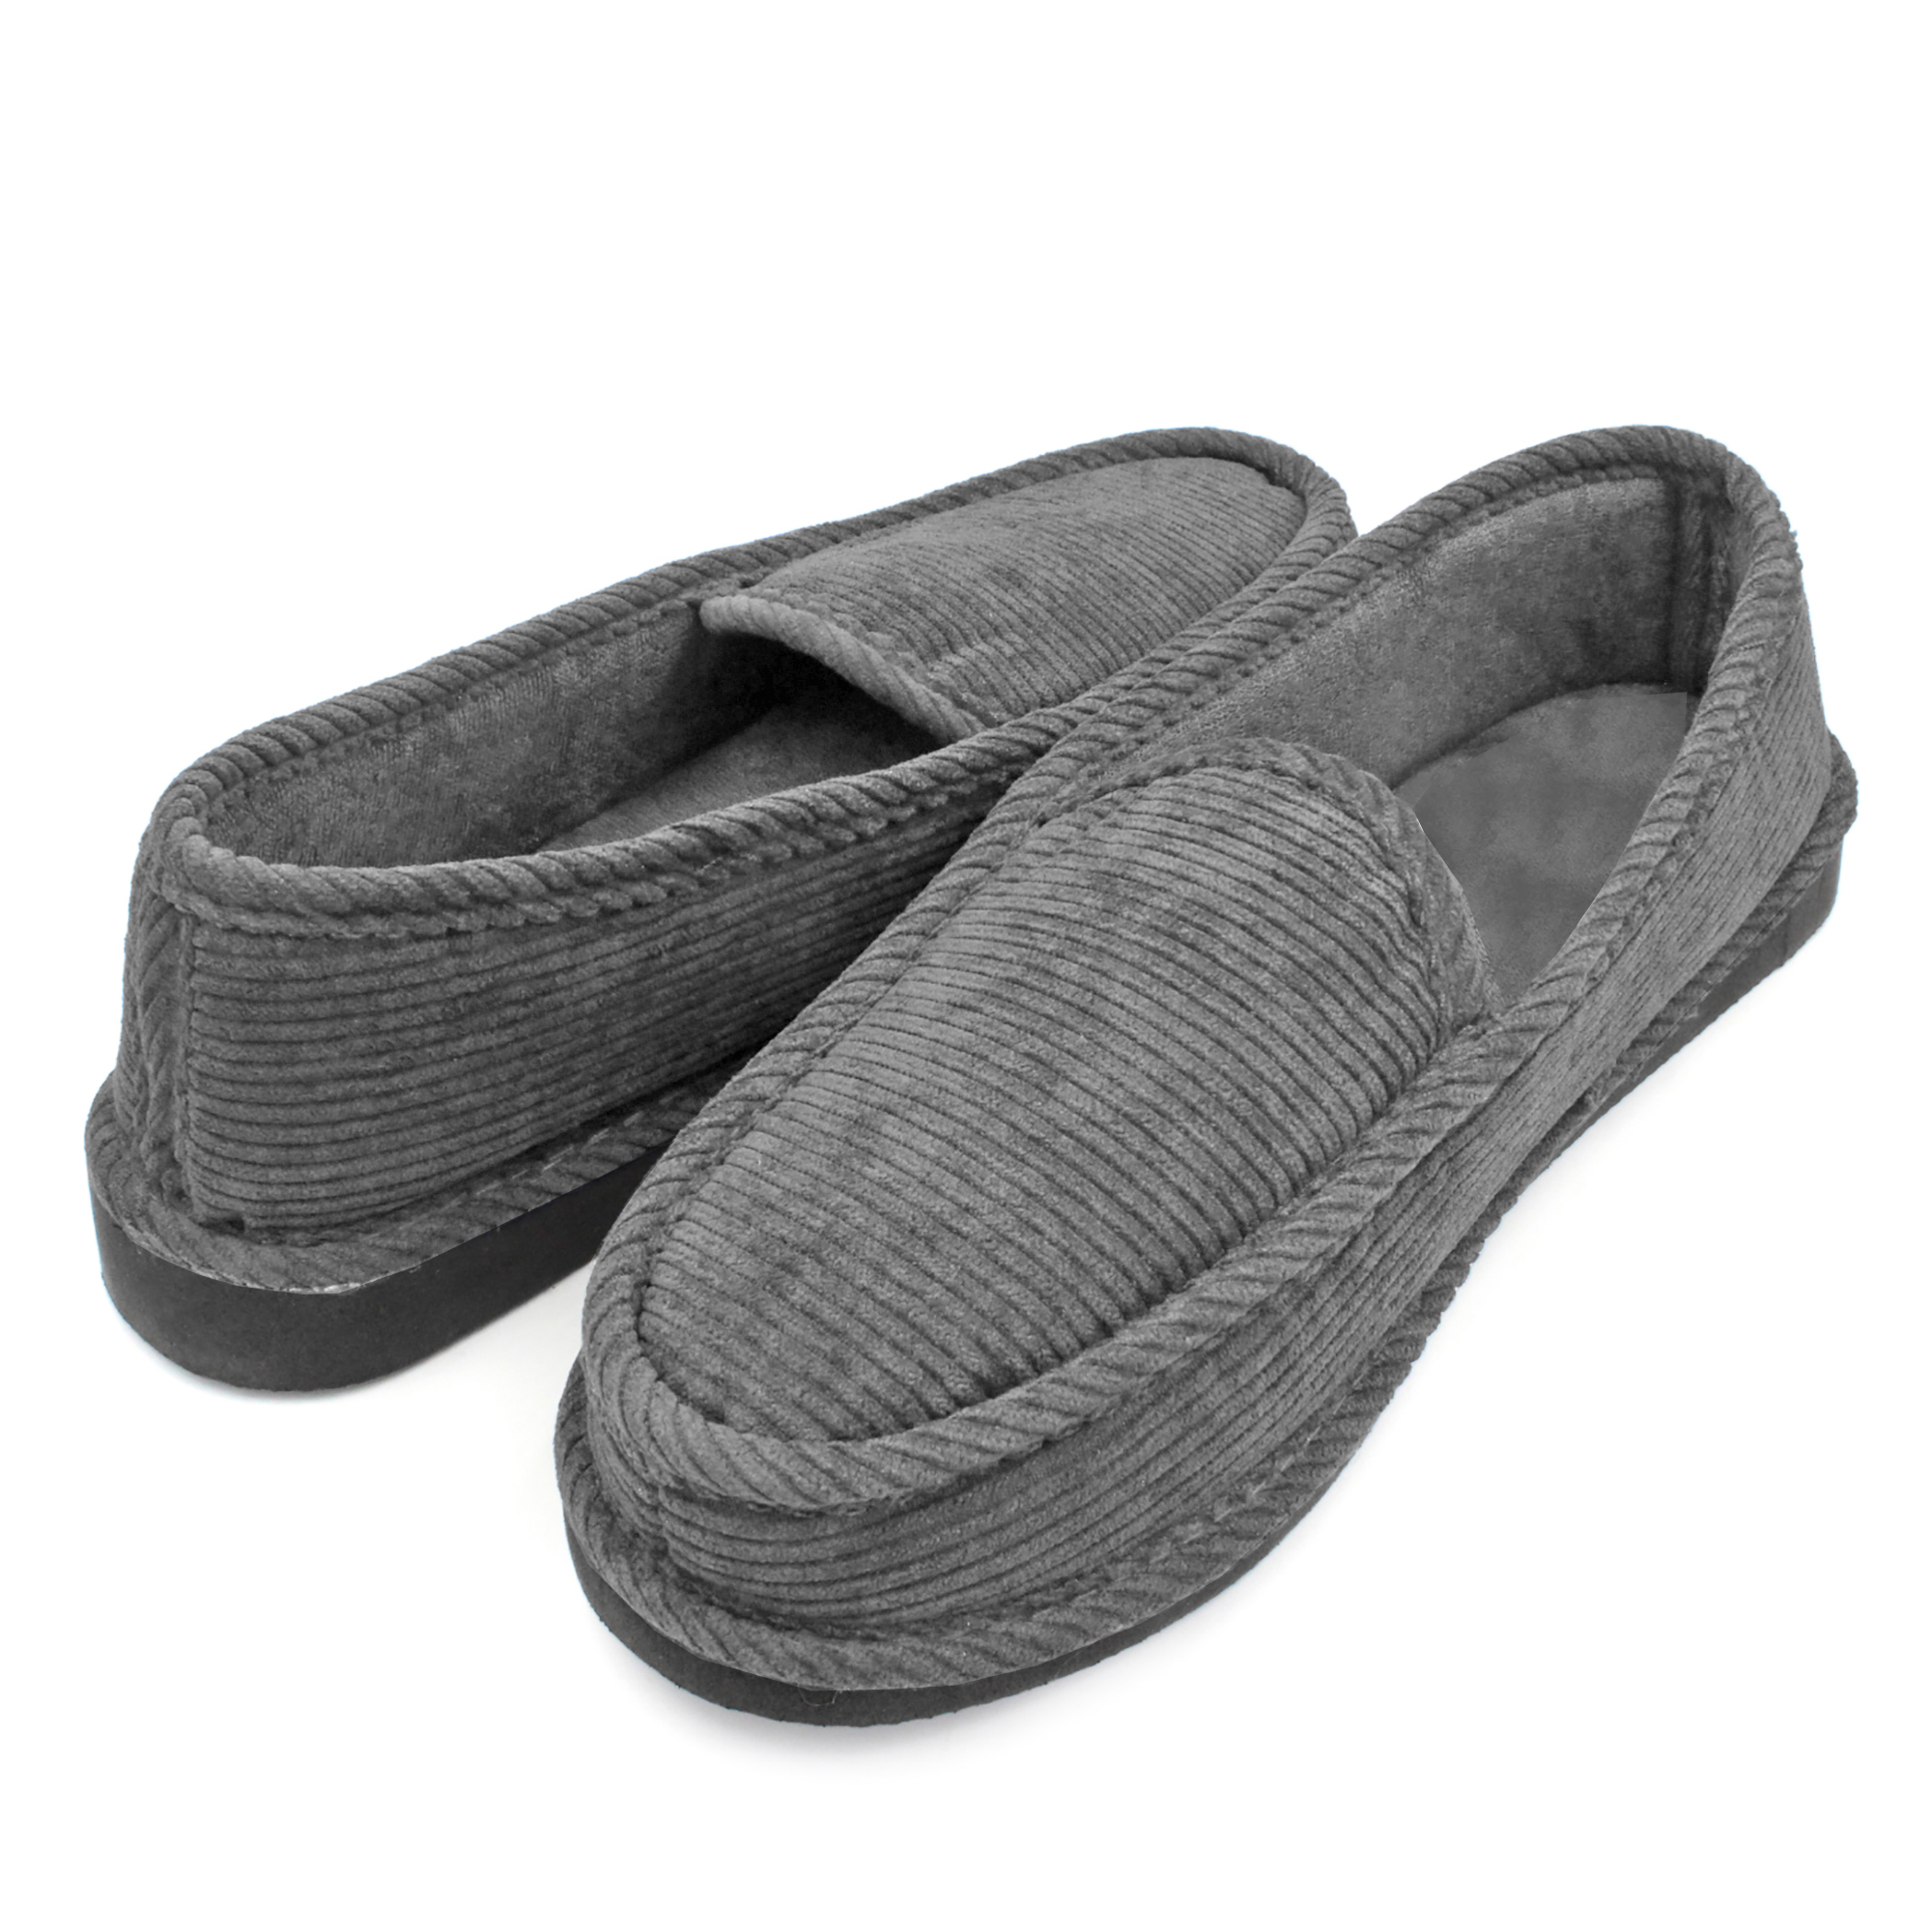 VENTANA Men’s Slippers Corduroy House Shoes | Mens Bedroom Slip On ...